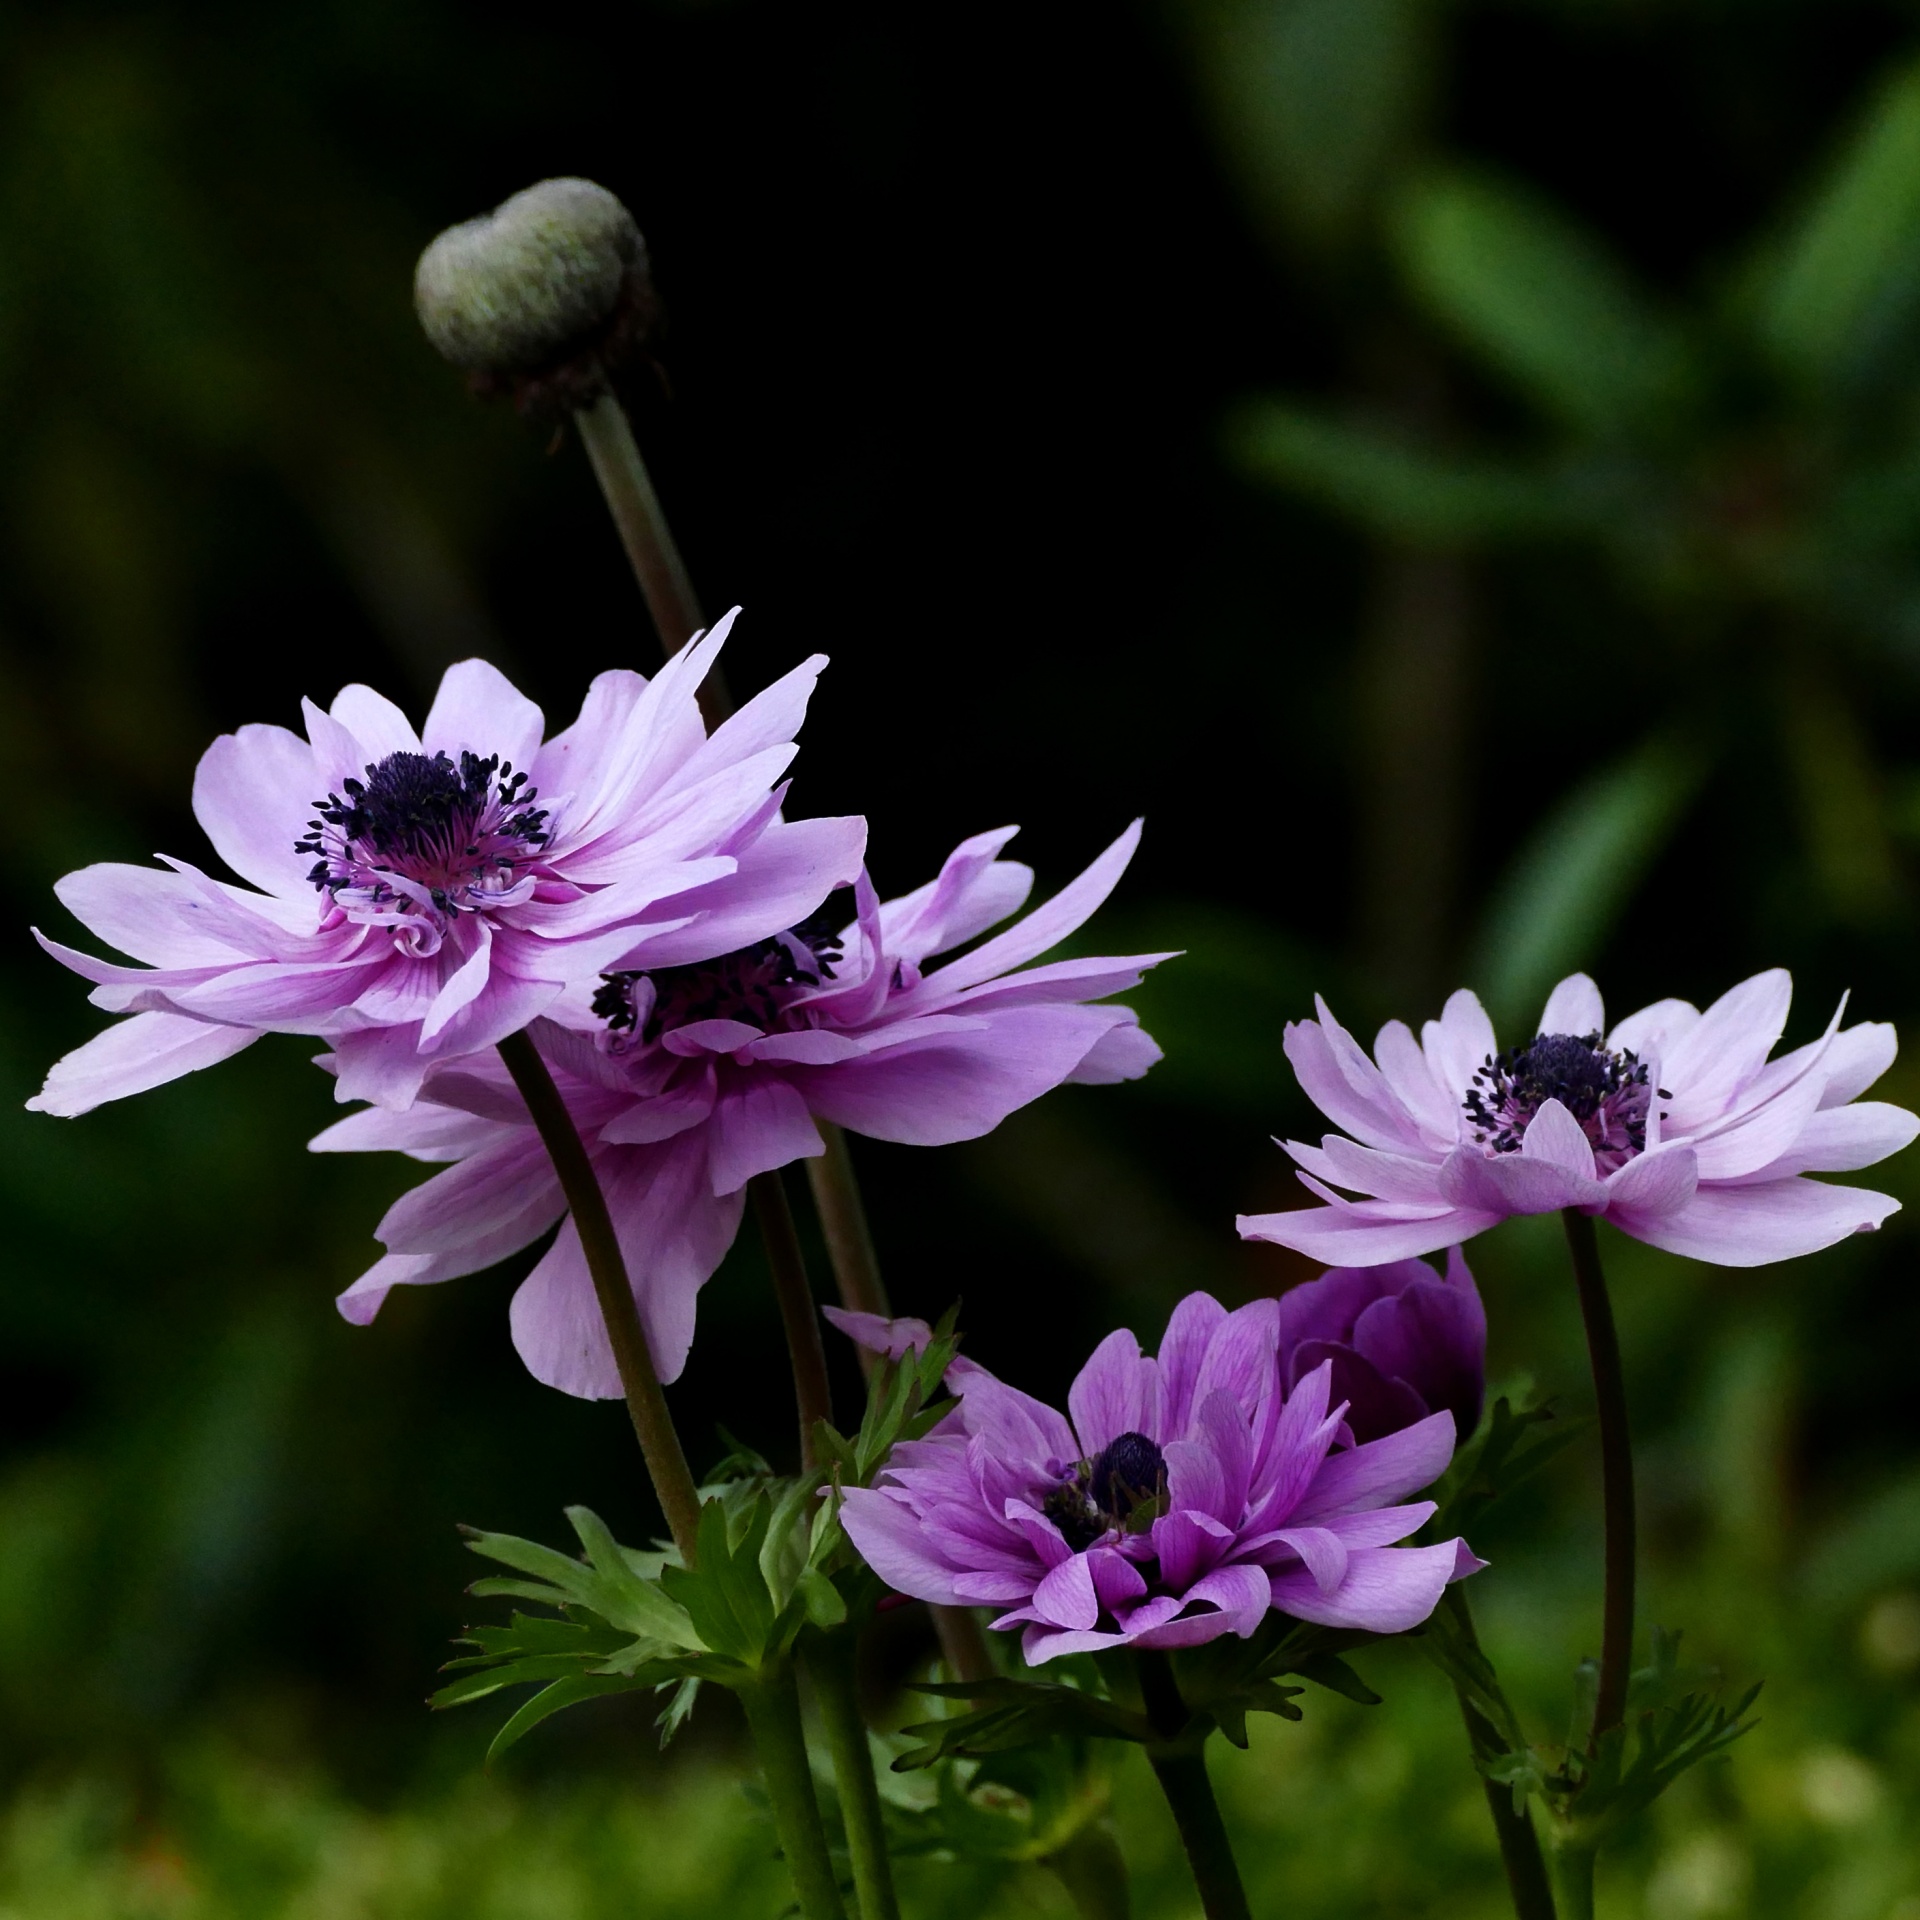 アネモネの花紫 無料画像 - Public Domain Pictures